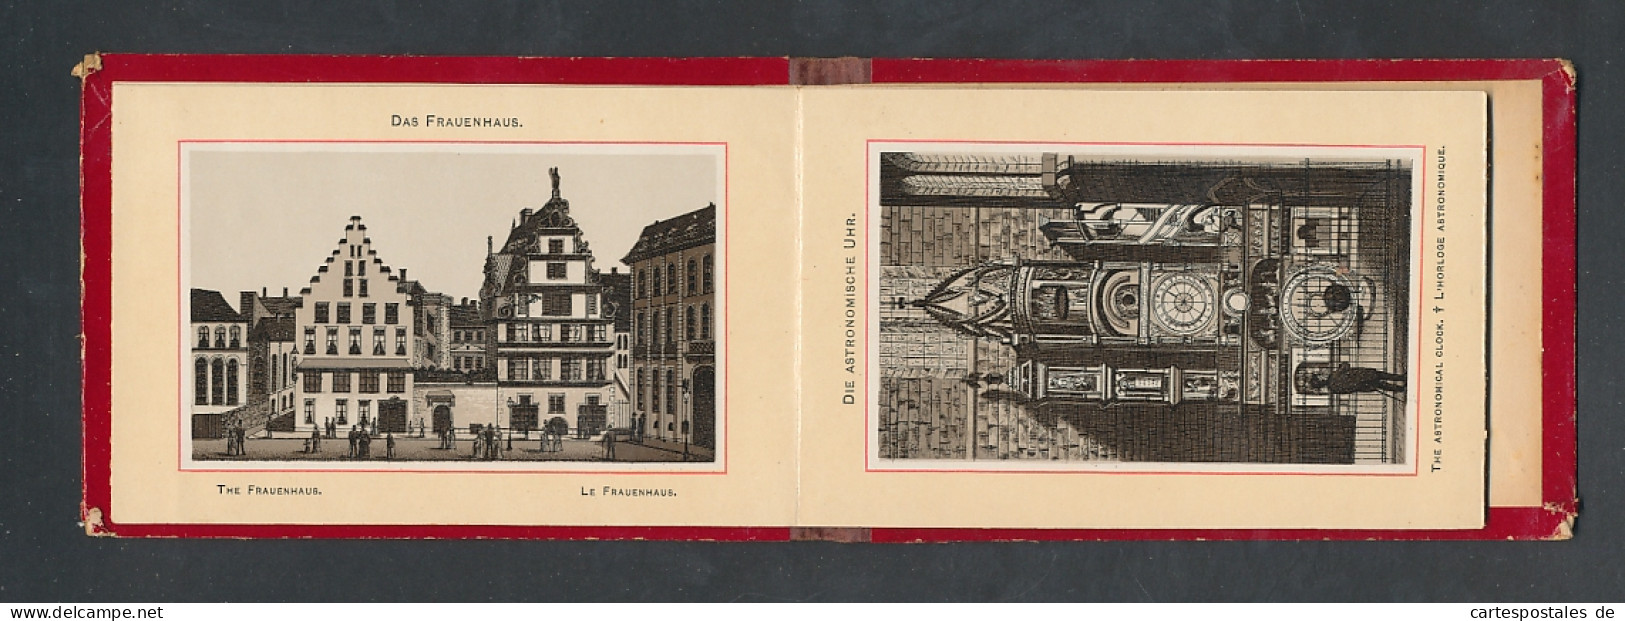 Leporello-Album Strassburg, Lithographien Von Münster, St. Thomas-Kirche, Frauenhaus, Etc.  - Lithographies